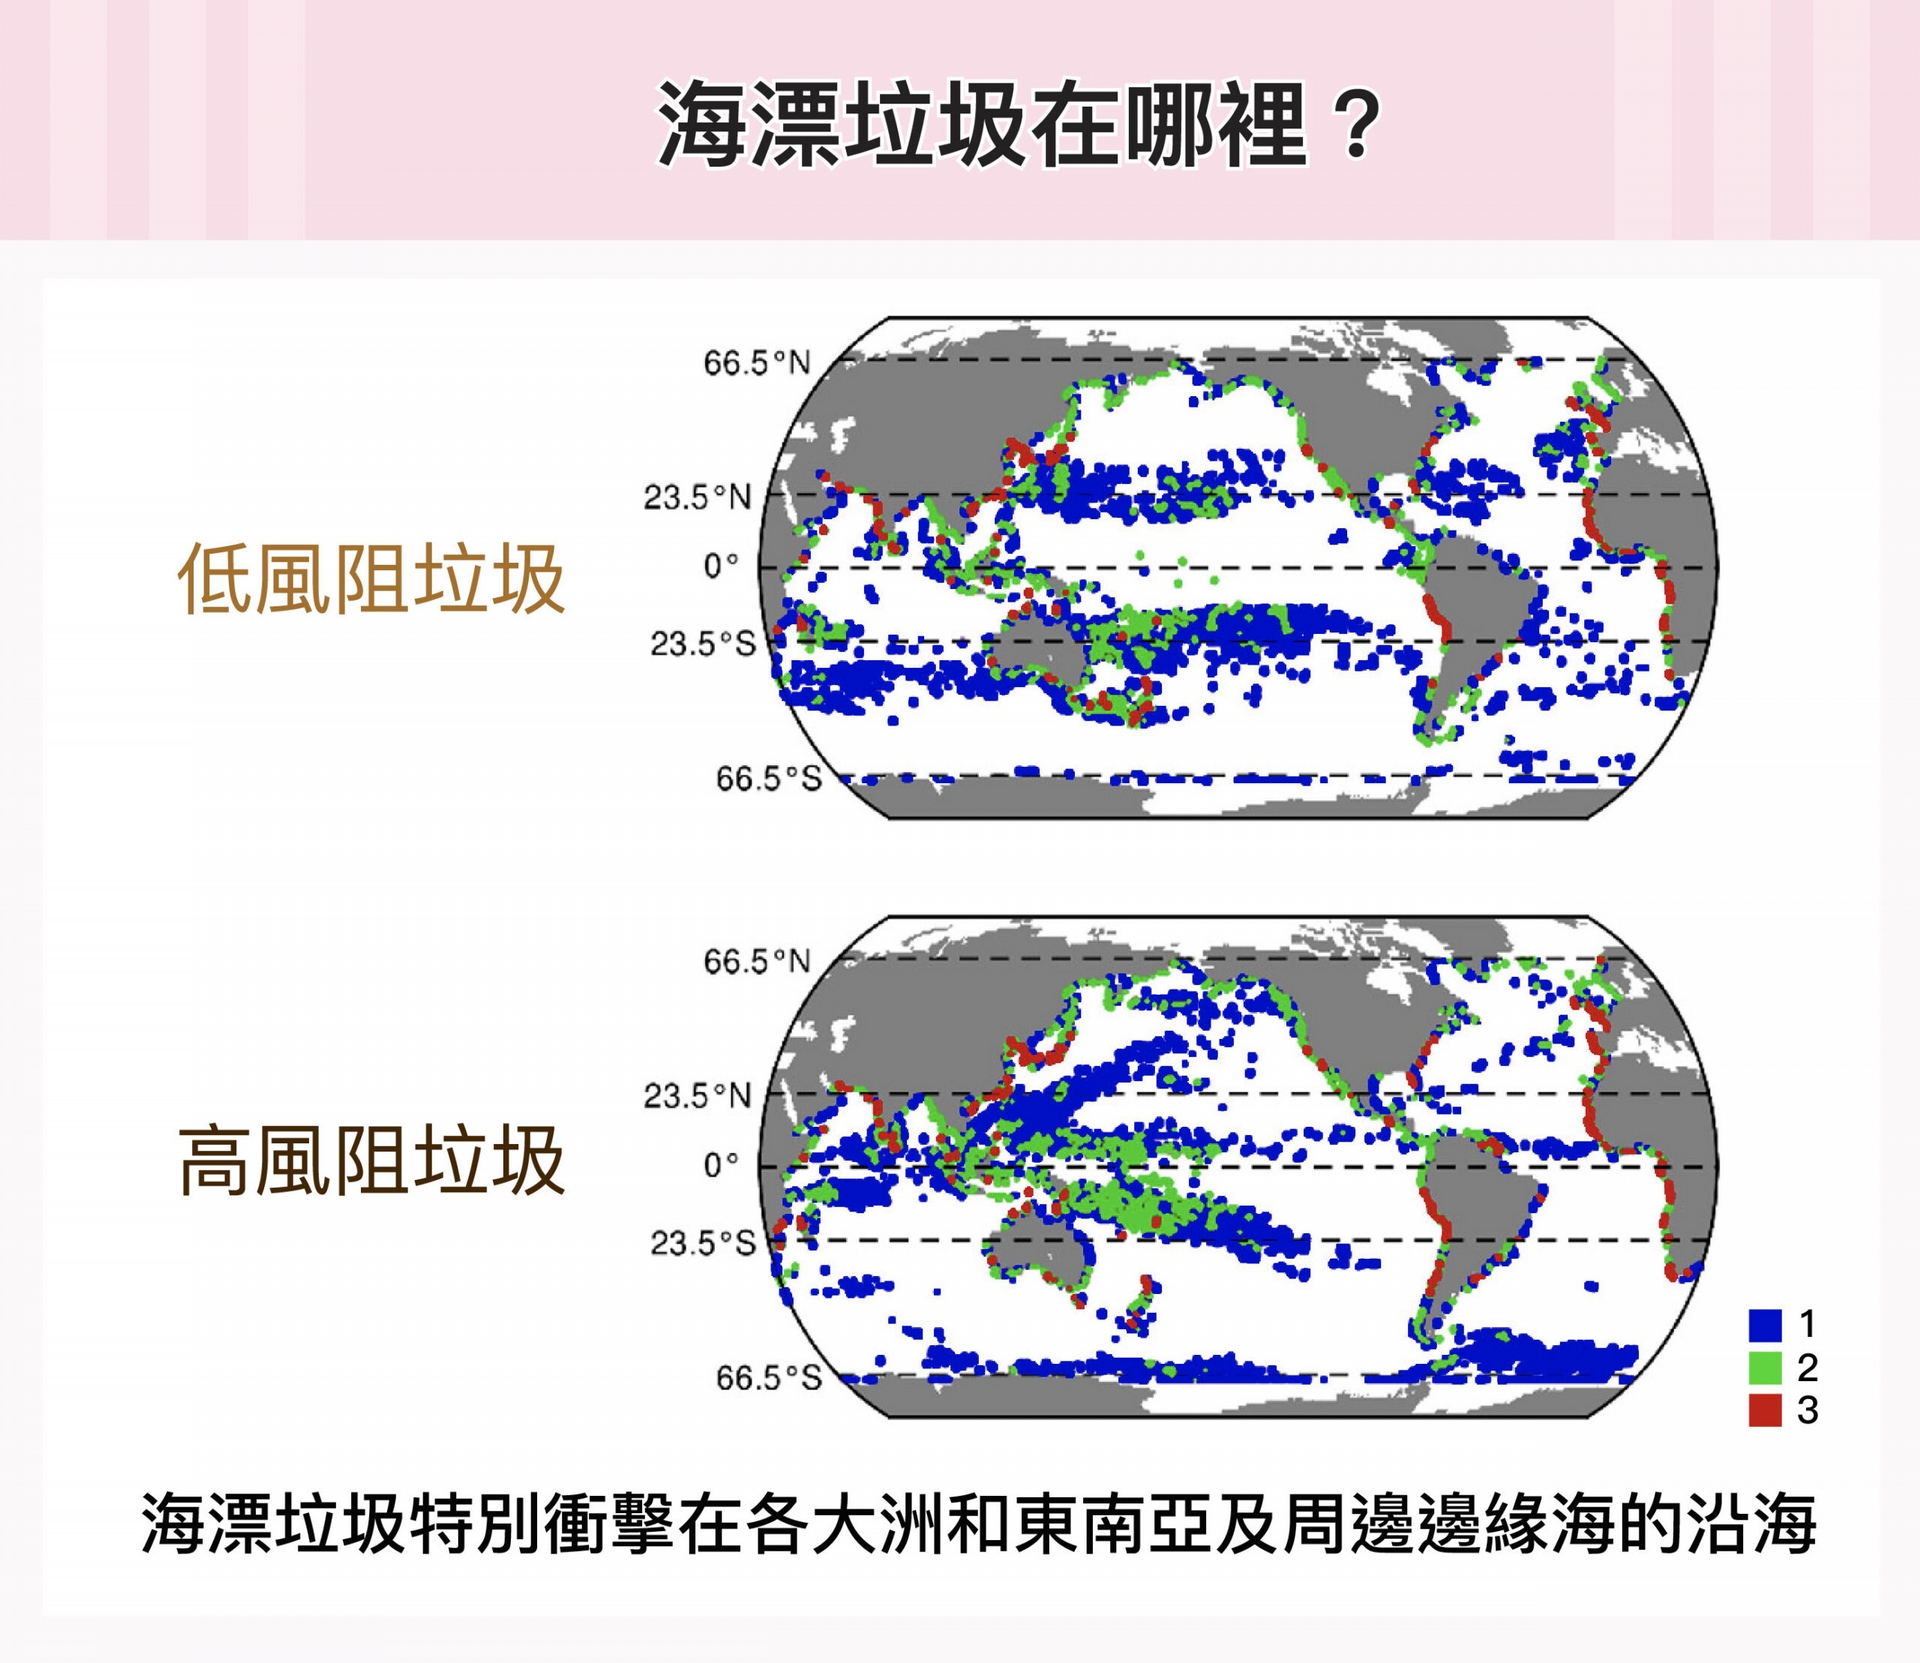 上圖為低風阻垃圾與高風阻垃圾的全球分布熱點圖。藍色記為 1，代表海漂垃圾熱點與 1 種海洋生態系服務熱點位於同一區；綠色記為 2，代表海漂垃圾與 2 種生態服務熱點區域重疊；以此類推，紅色記為 3，代表與 3 種生態服務熱點全部重合。 圖│研之有物（資料來源│鄭明修） 